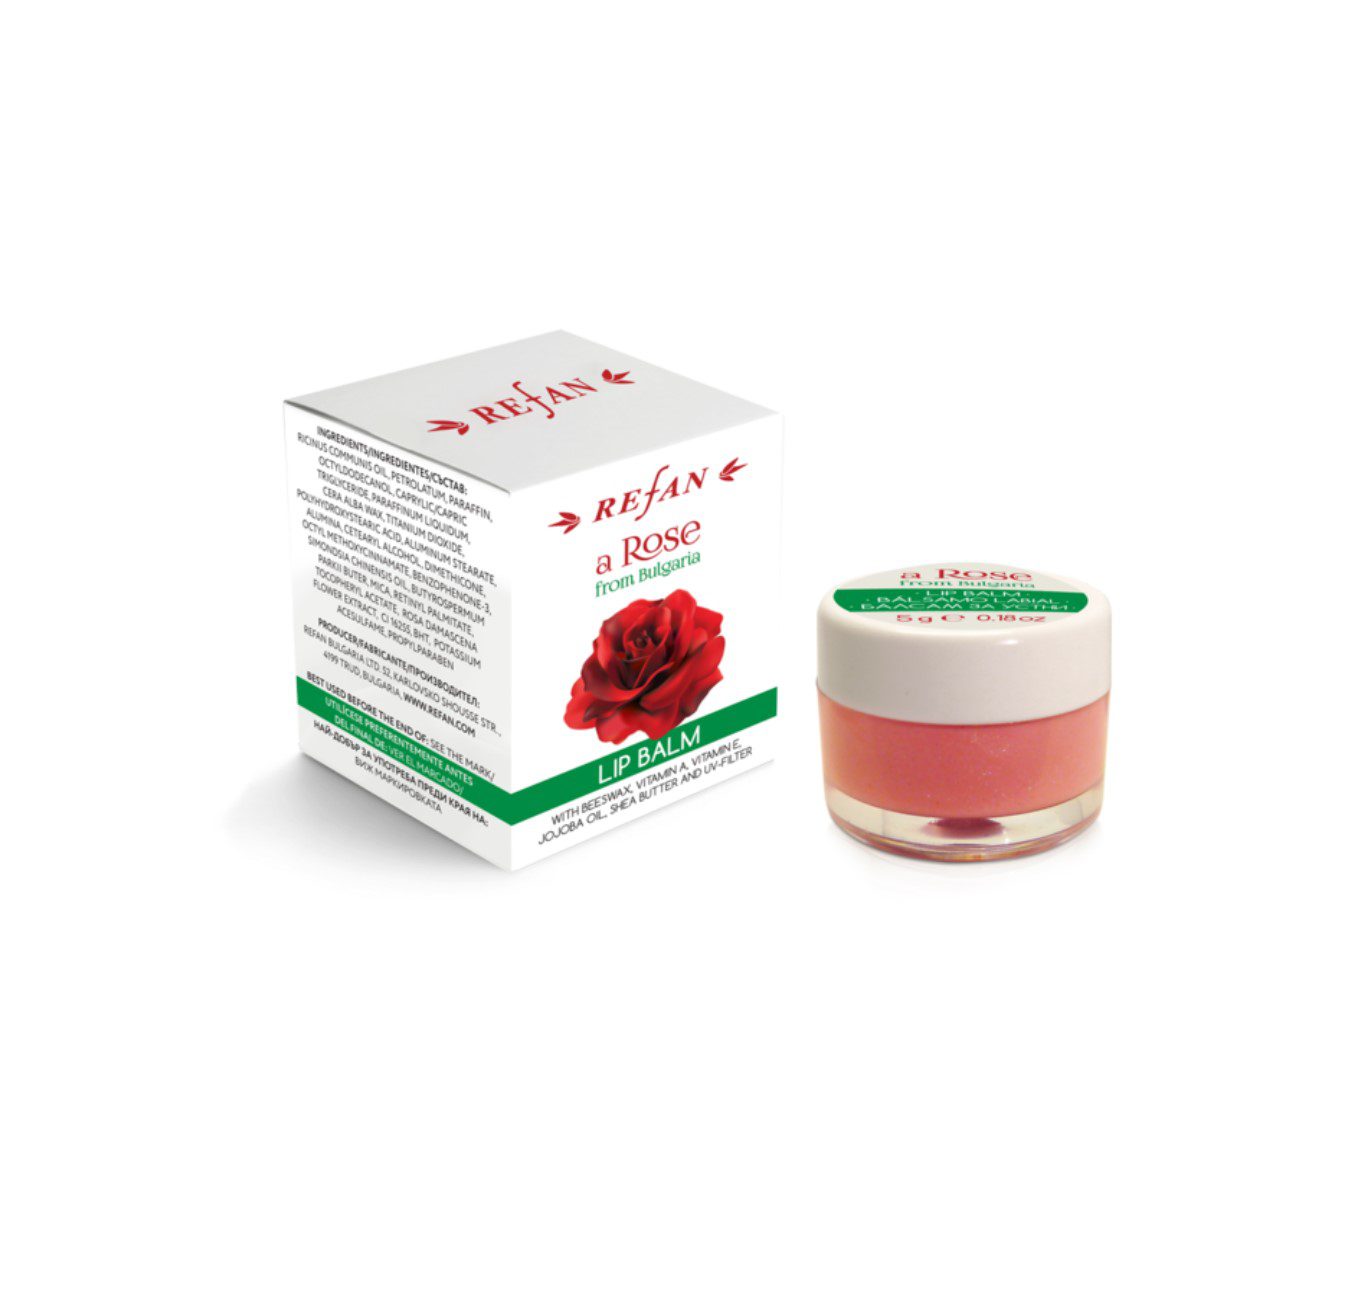 Refan biologische rozenolie lippenbalsem - verzacht de droge huid van de lippen - Bulgarije rozenolie 5ml